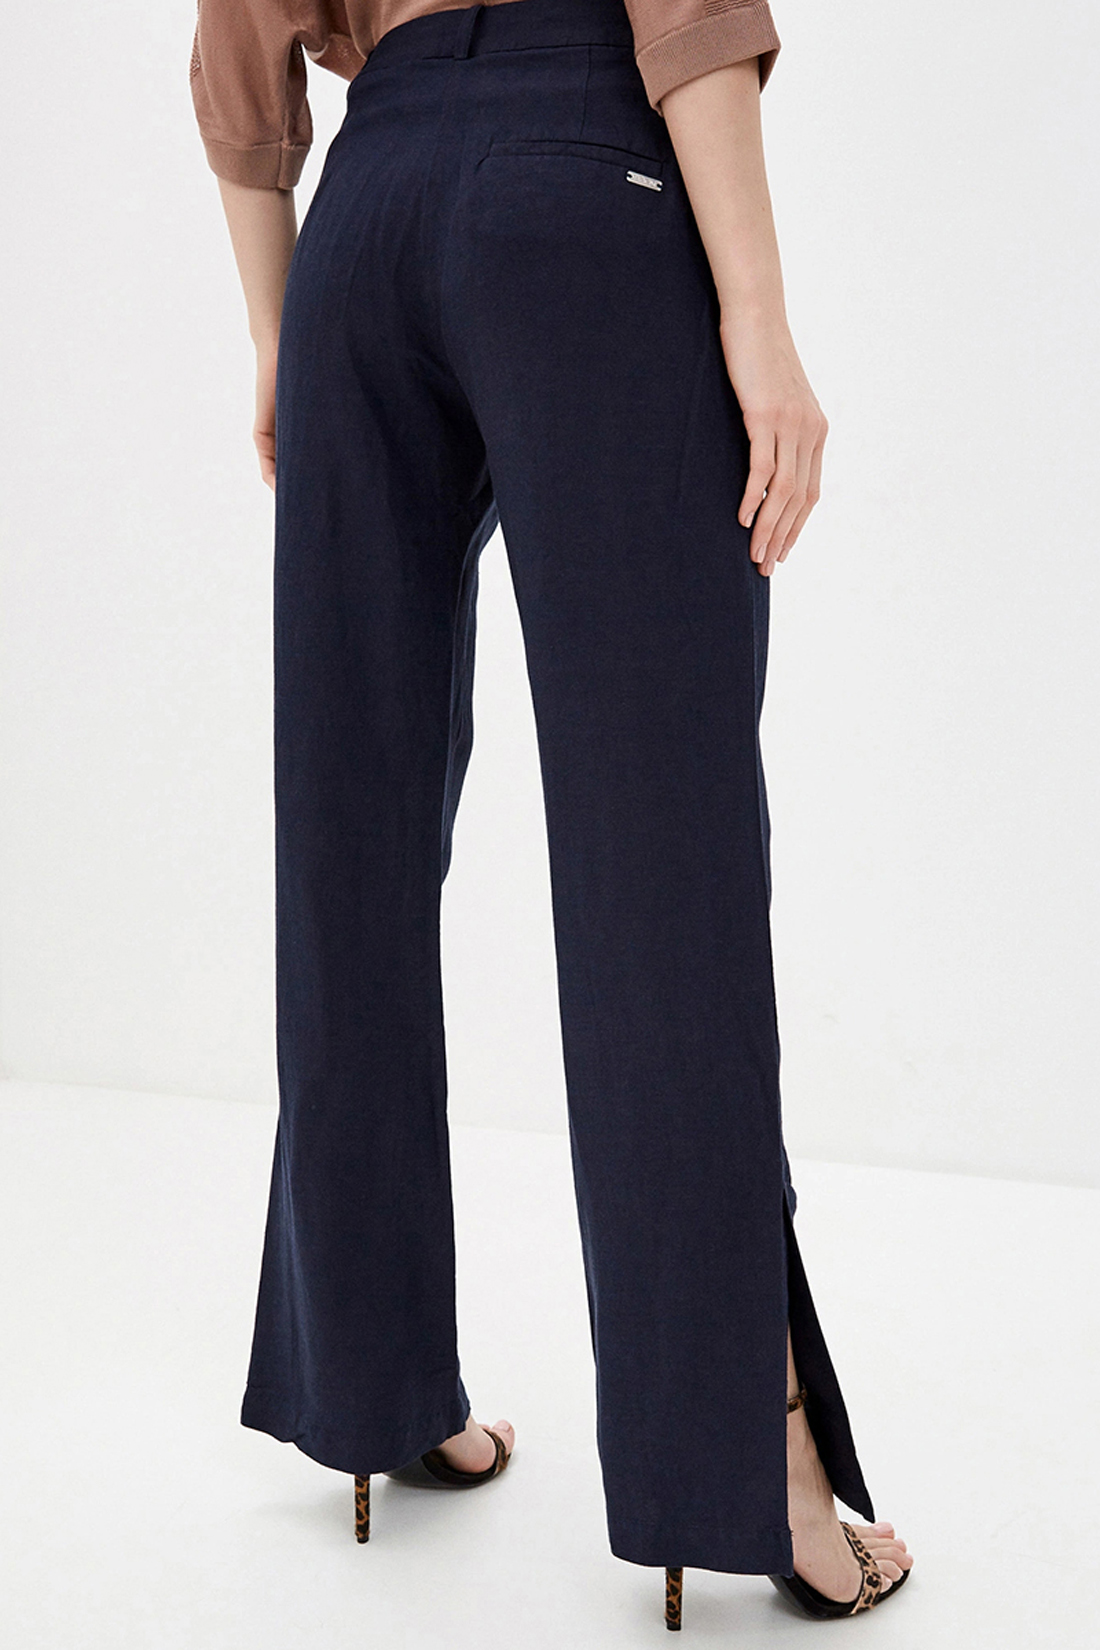 Широкие брюки с разрезами (арт. baon B290023), размер L, цвет синий Широкие брюки с разрезами (арт. baon B290023) - фото 2